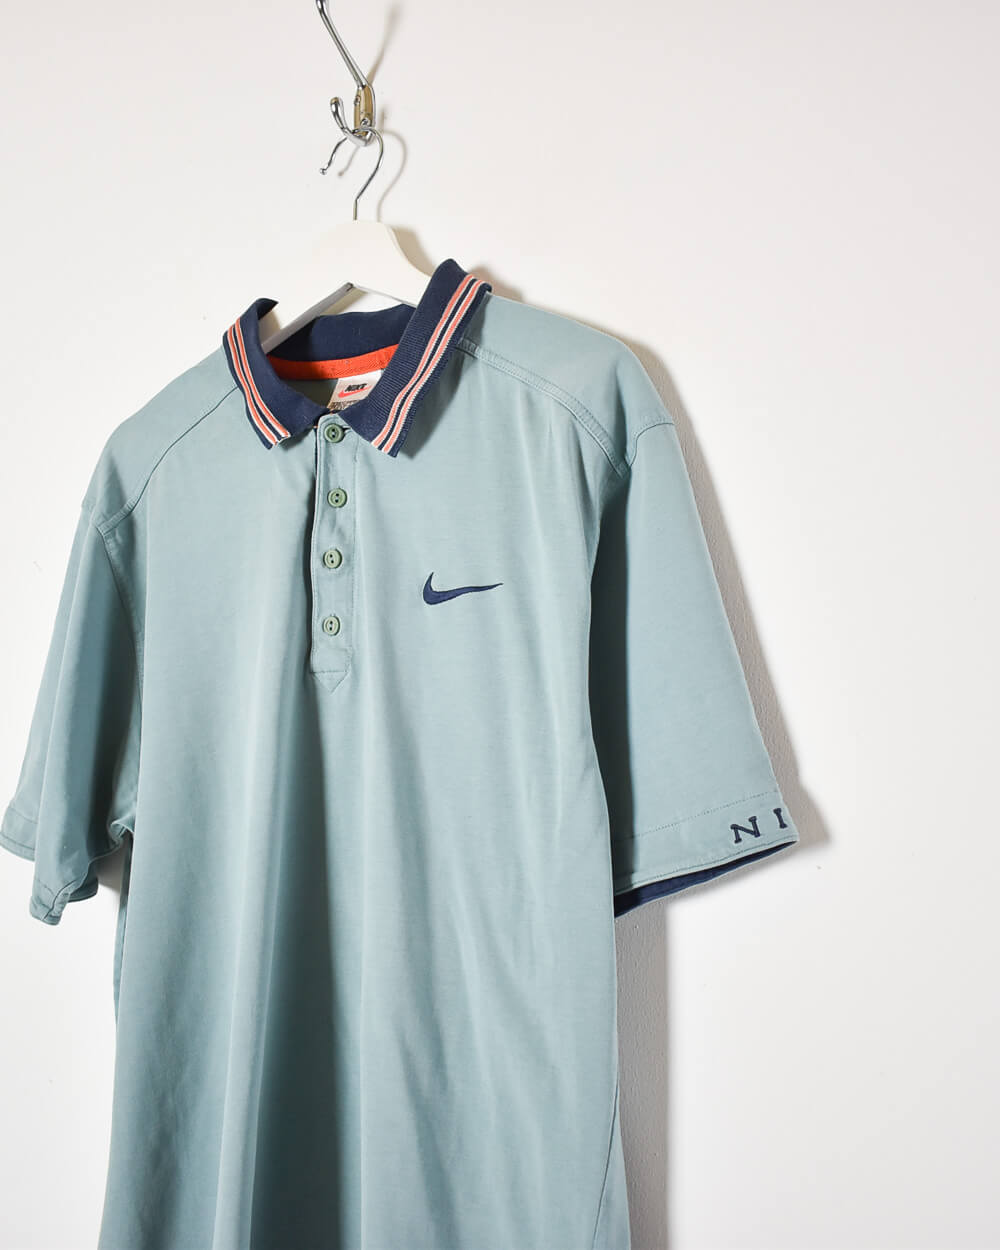 Baby Nike Polo Shirt - Large